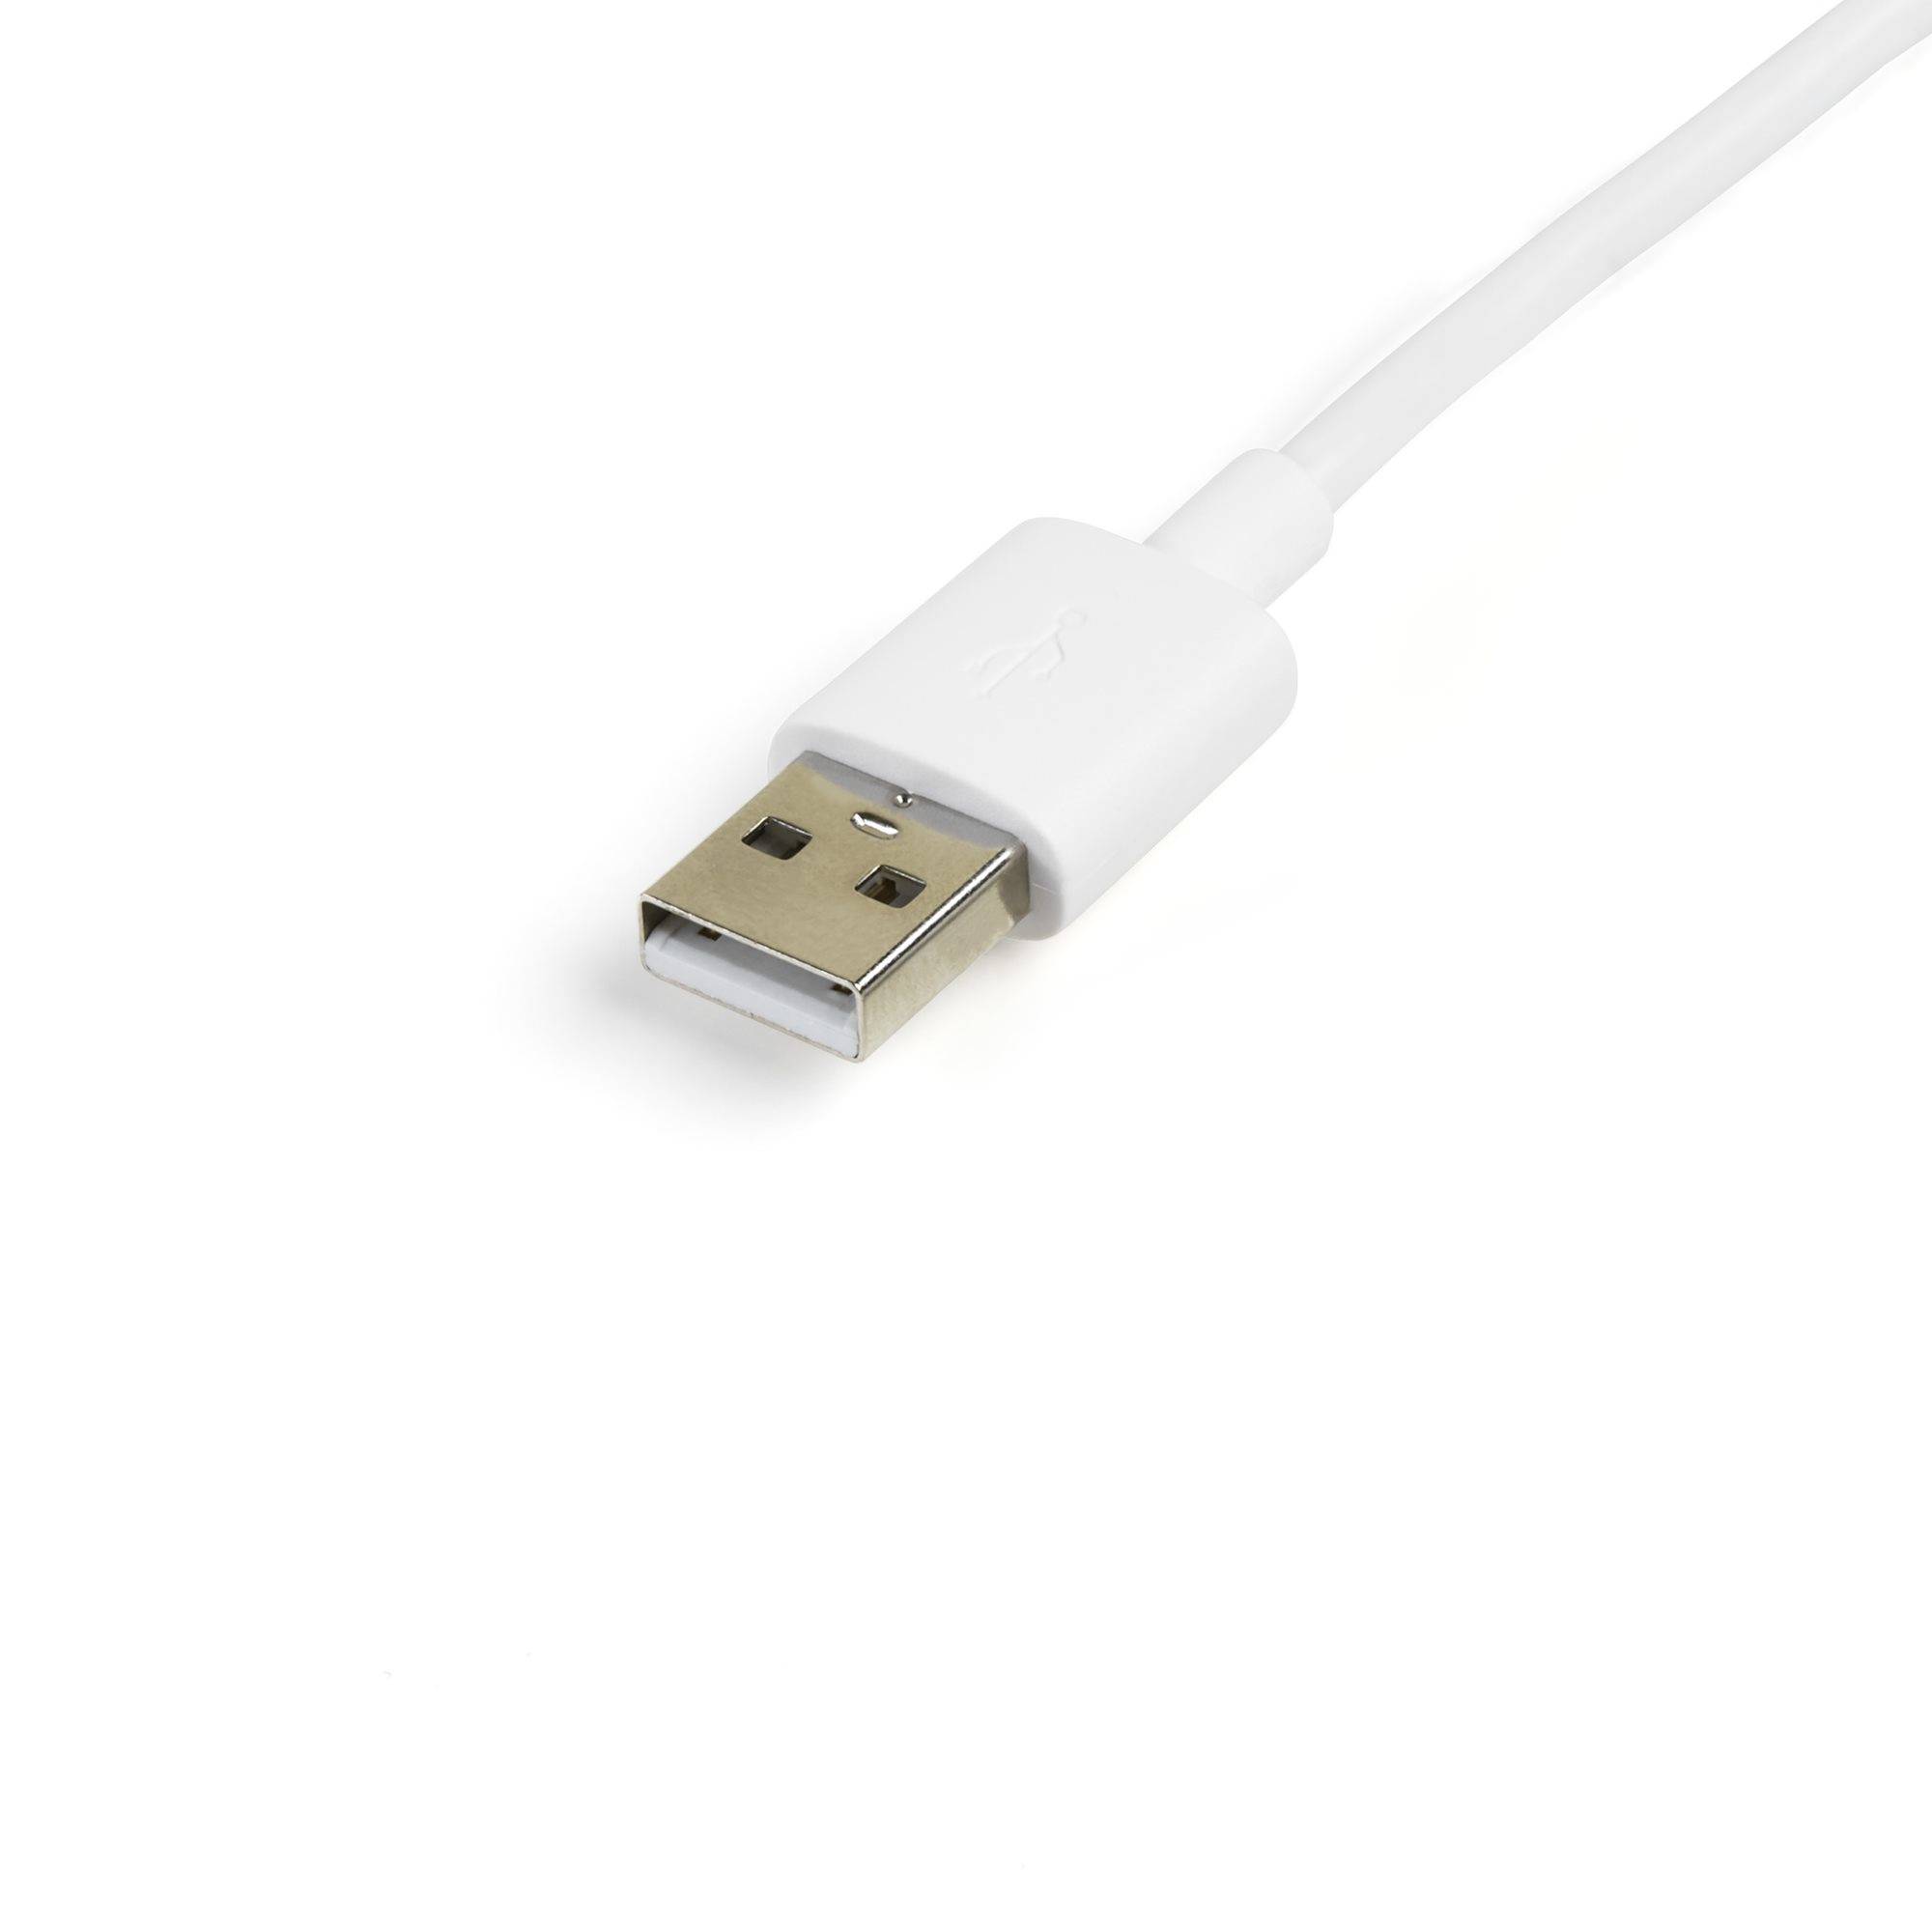 Rca Informatique - image du produit : CABLE LIGHTNING OU MICRO USB VERS USB 1 M - M/M - BLANC